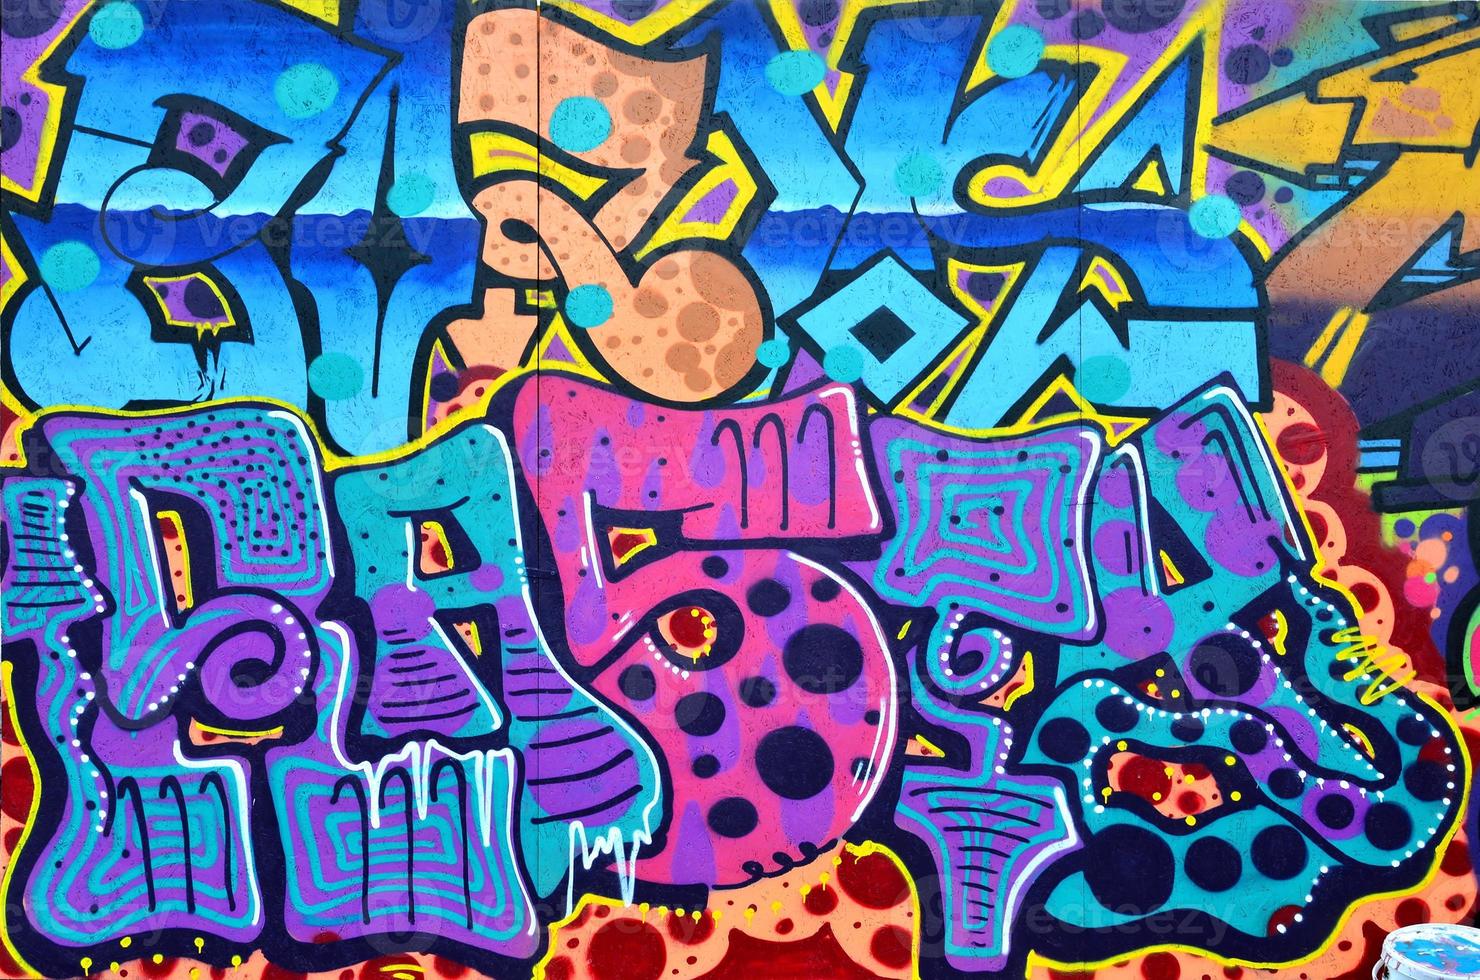 art sous terre. beau style de graffiti d'art de rue. le mur est orné de dessins abstraits de peinture maison. culture urbaine emblématique moderne des jeunes de la rue. image élégante abstraite sur le mur photo